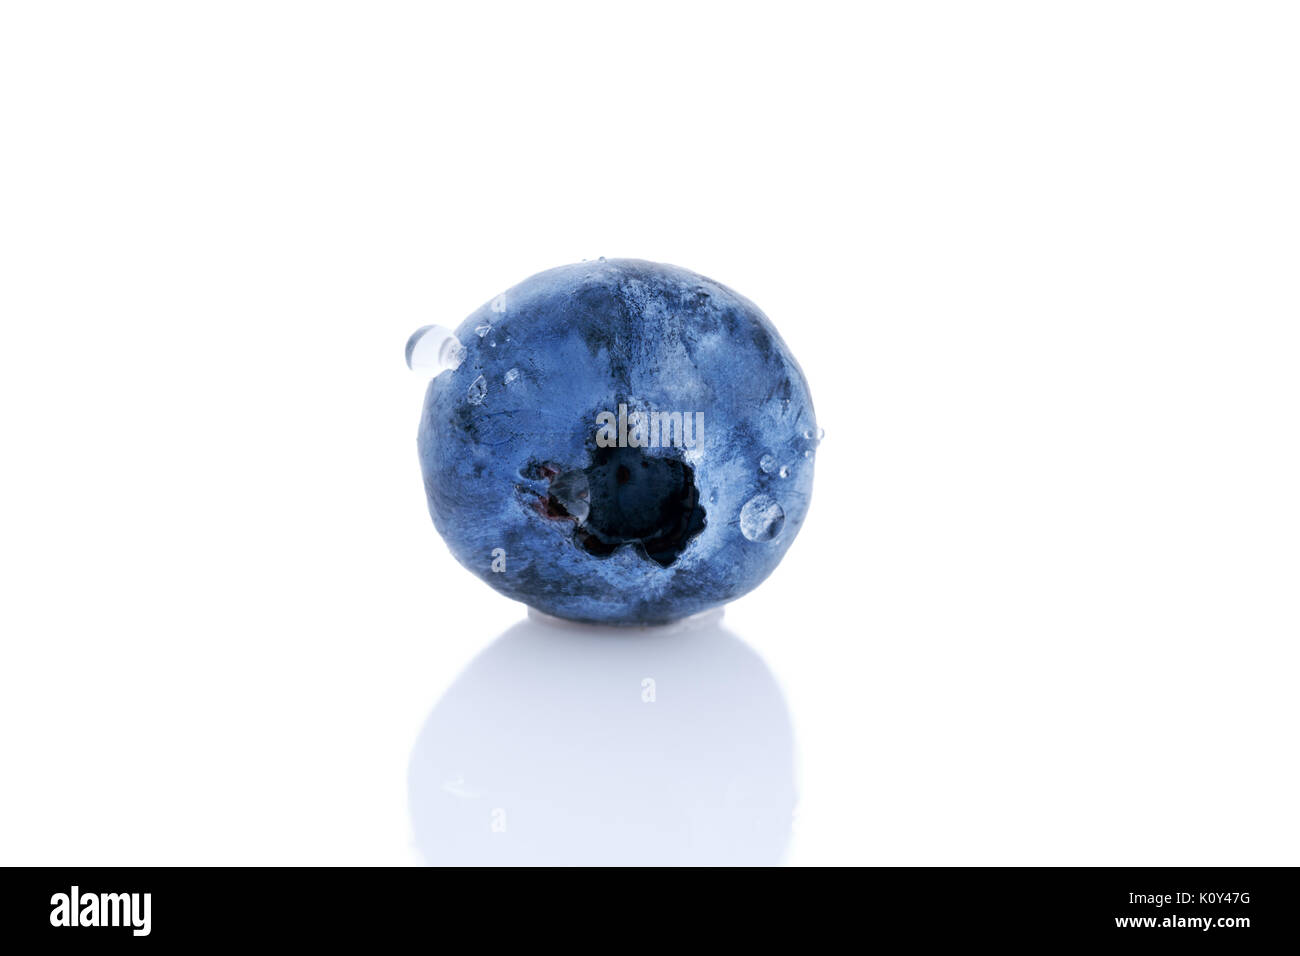 single blueberry isolated on white background Stock Photo